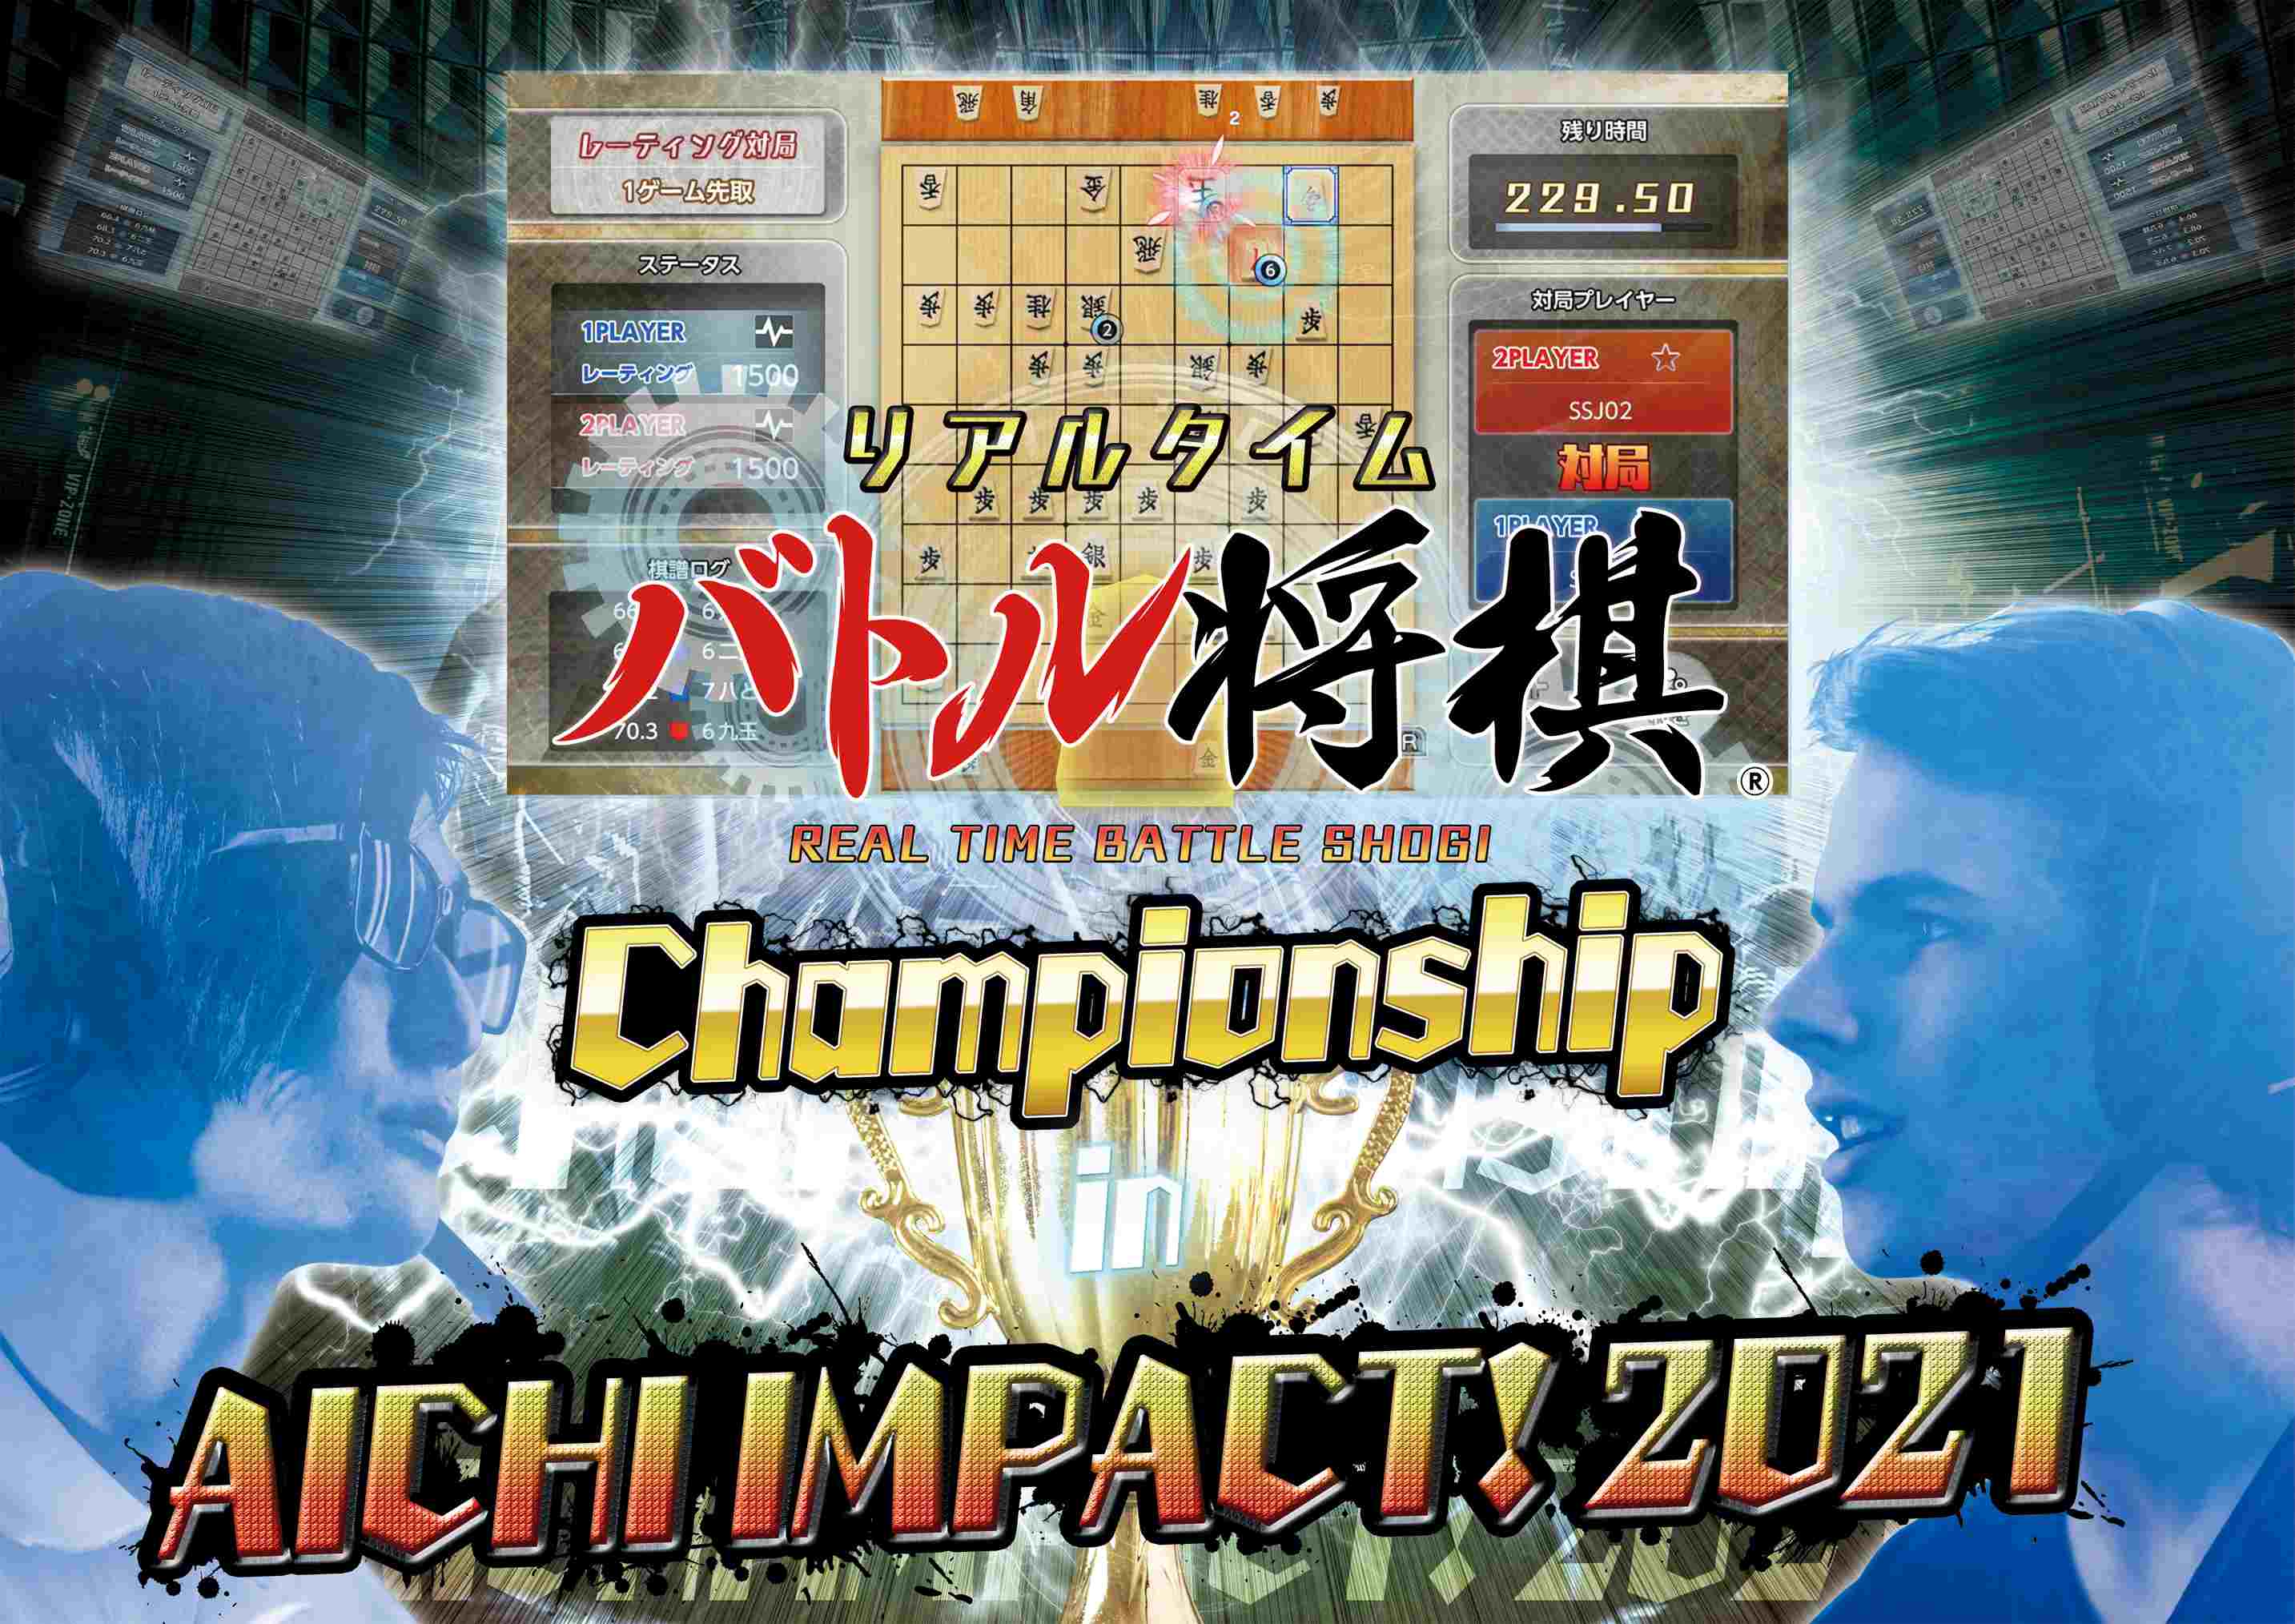 「リアルタイムバトル将棋 Championship in AICHI IMPACT!2021」の内容が一部変更に「リアルタイムバトル将棋 Championship in AICHI IMPACT!2021」の内容が一部変更に